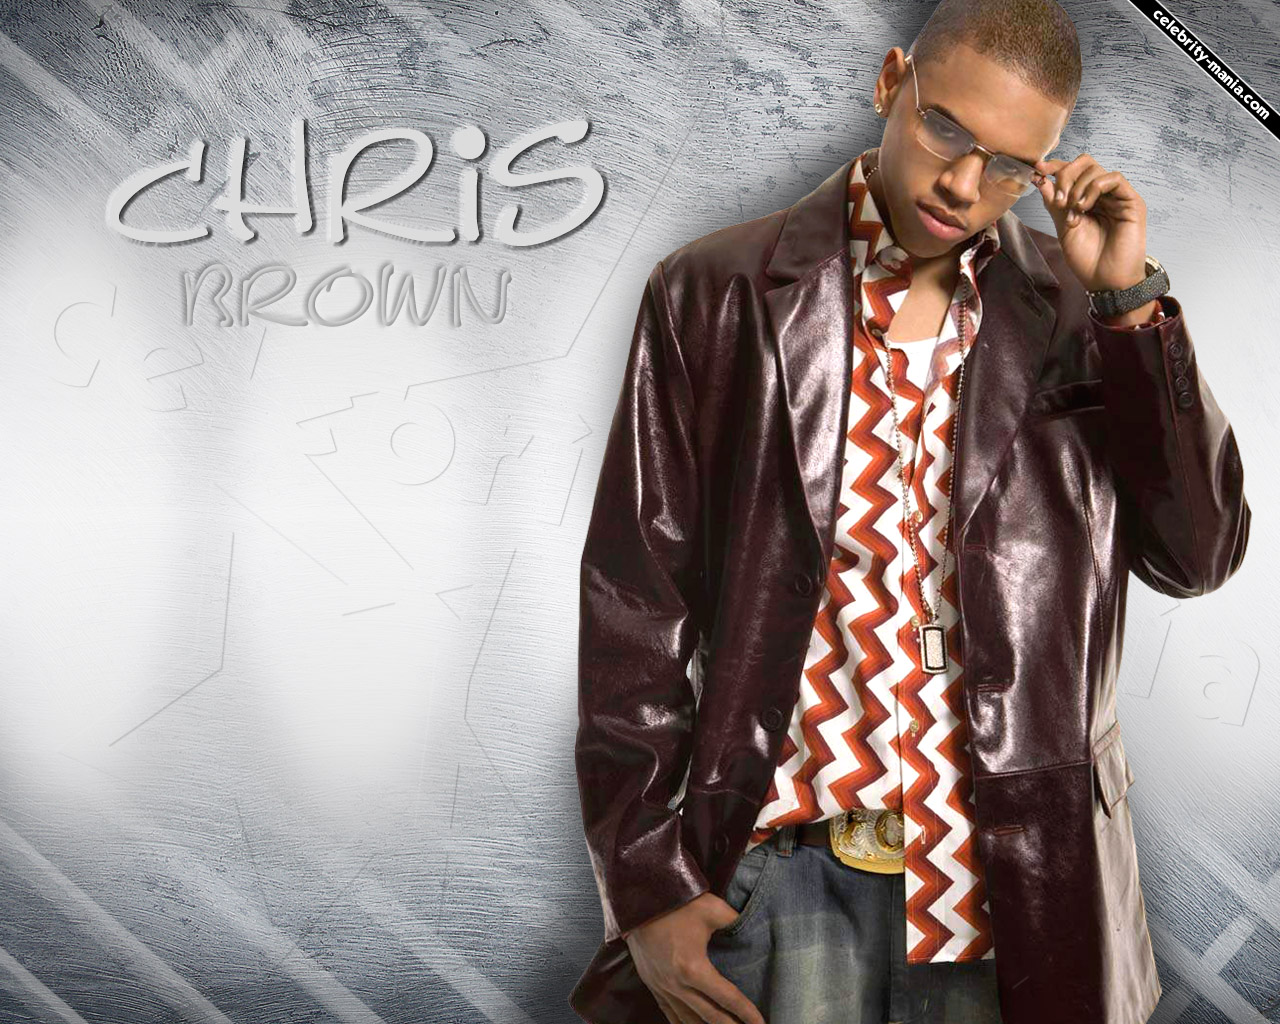 Chris Brown Wallpaper